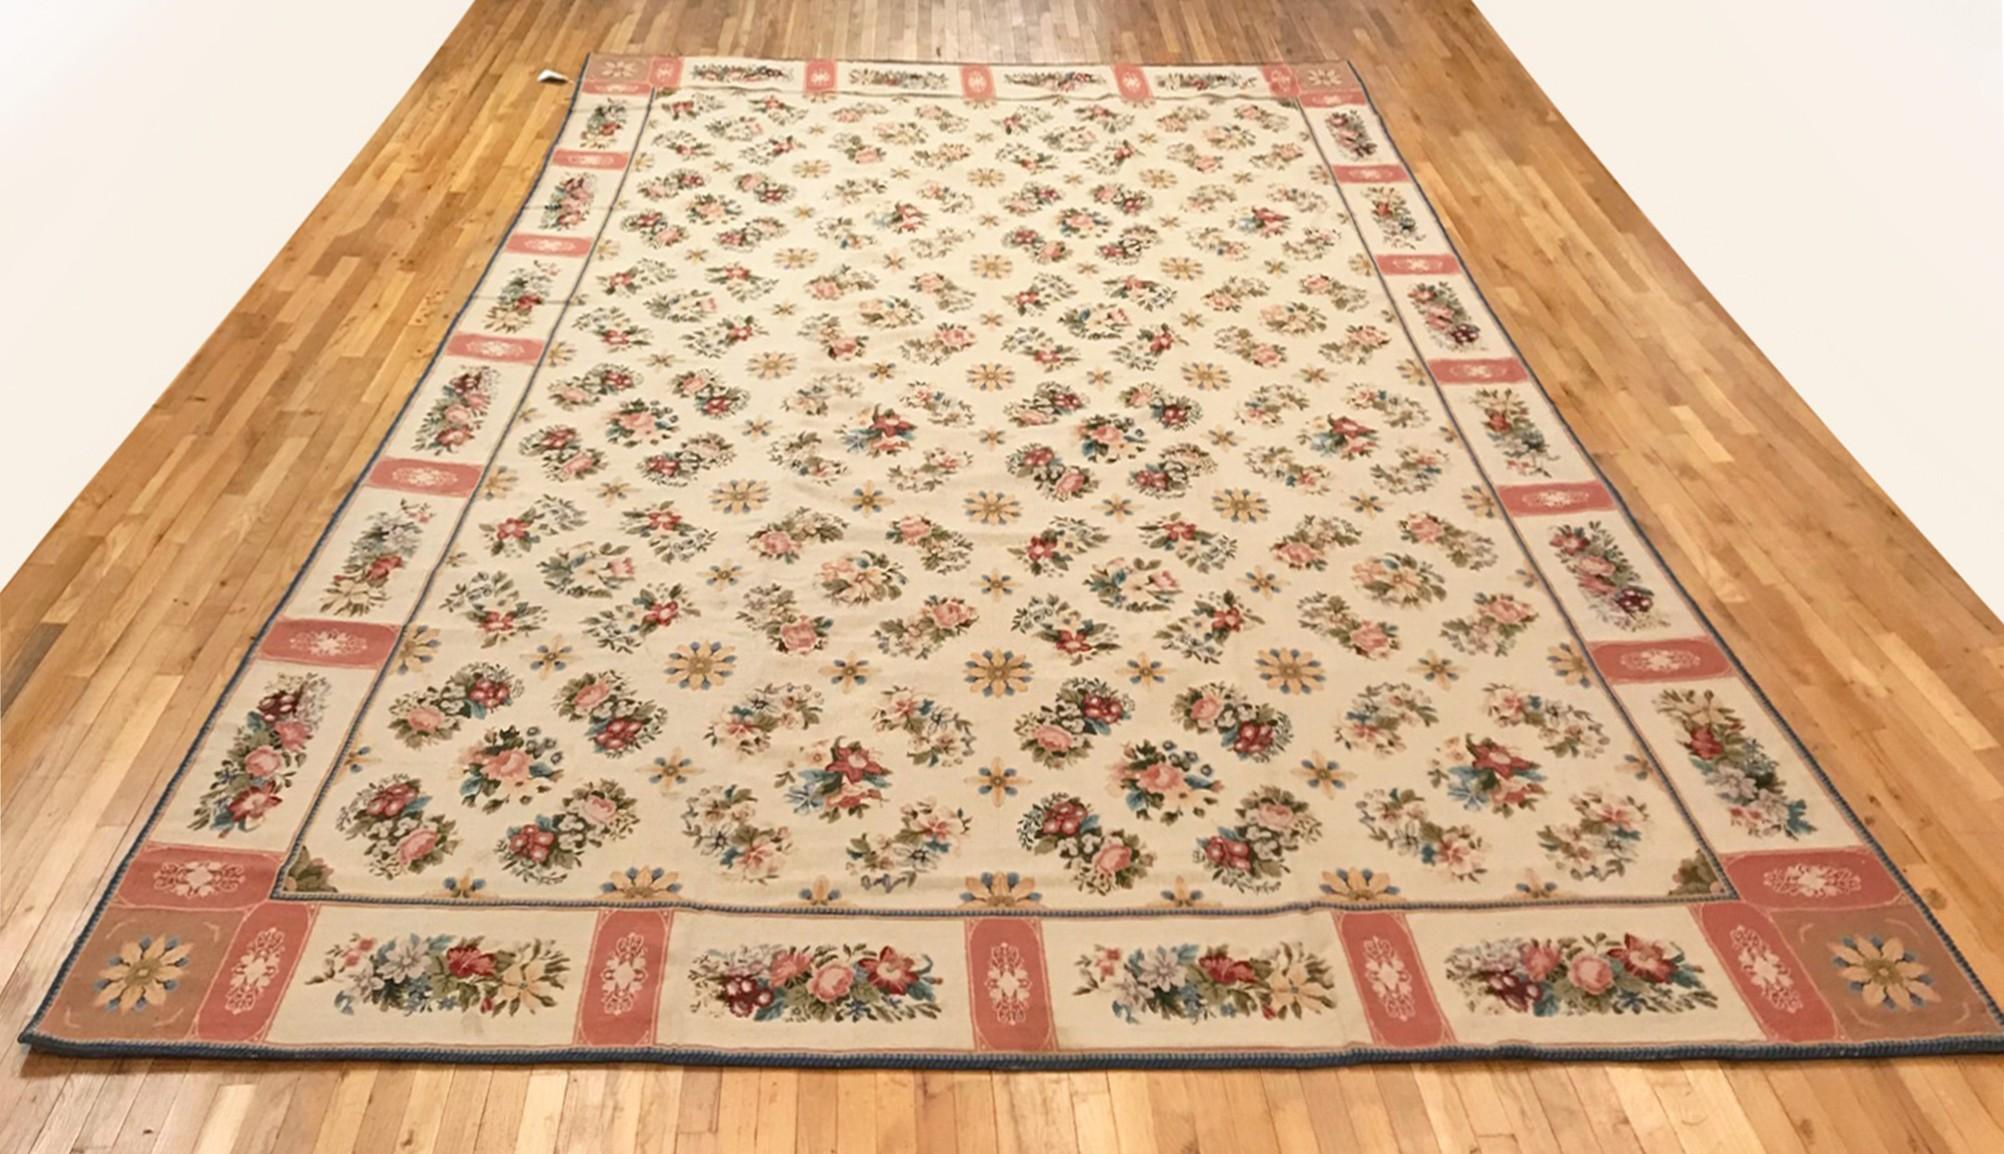 Ancien tapis à l'aiguille continental, de grande taille, circa 1900.

Un tapis à l'aiguille Continental antique unique en son genre, noué à la main avec des poils de laine doux. Ce ravissant tapis noué à la main présente un motif floral répétitif